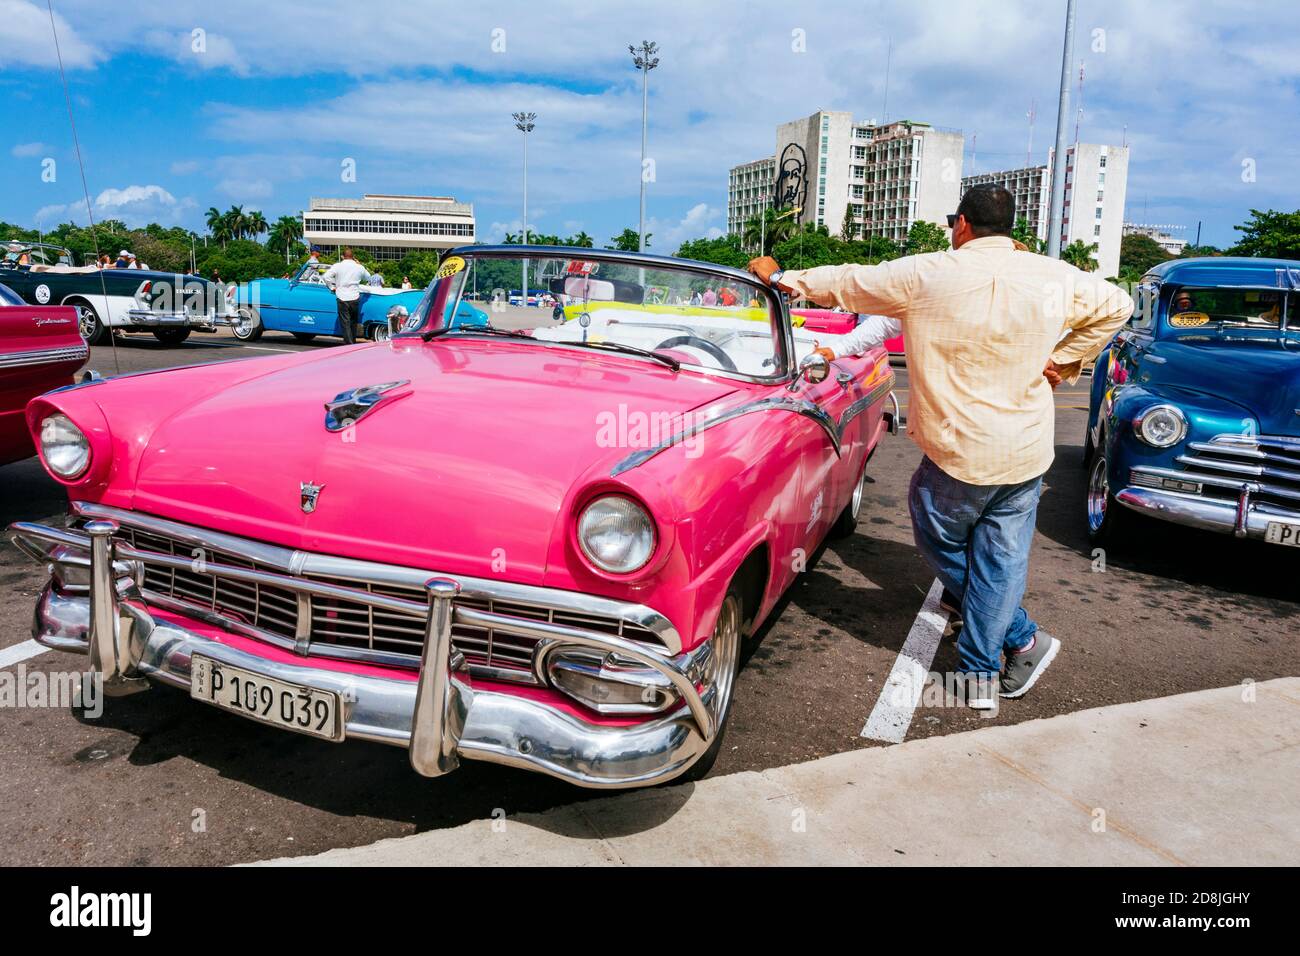 Les chauffeurs de taxi parlent sur la place de la Révolution - Plaza de la revolución. La Habana - la Havane, Cuba, Amérique latine et Caraïbes Banque D'Images